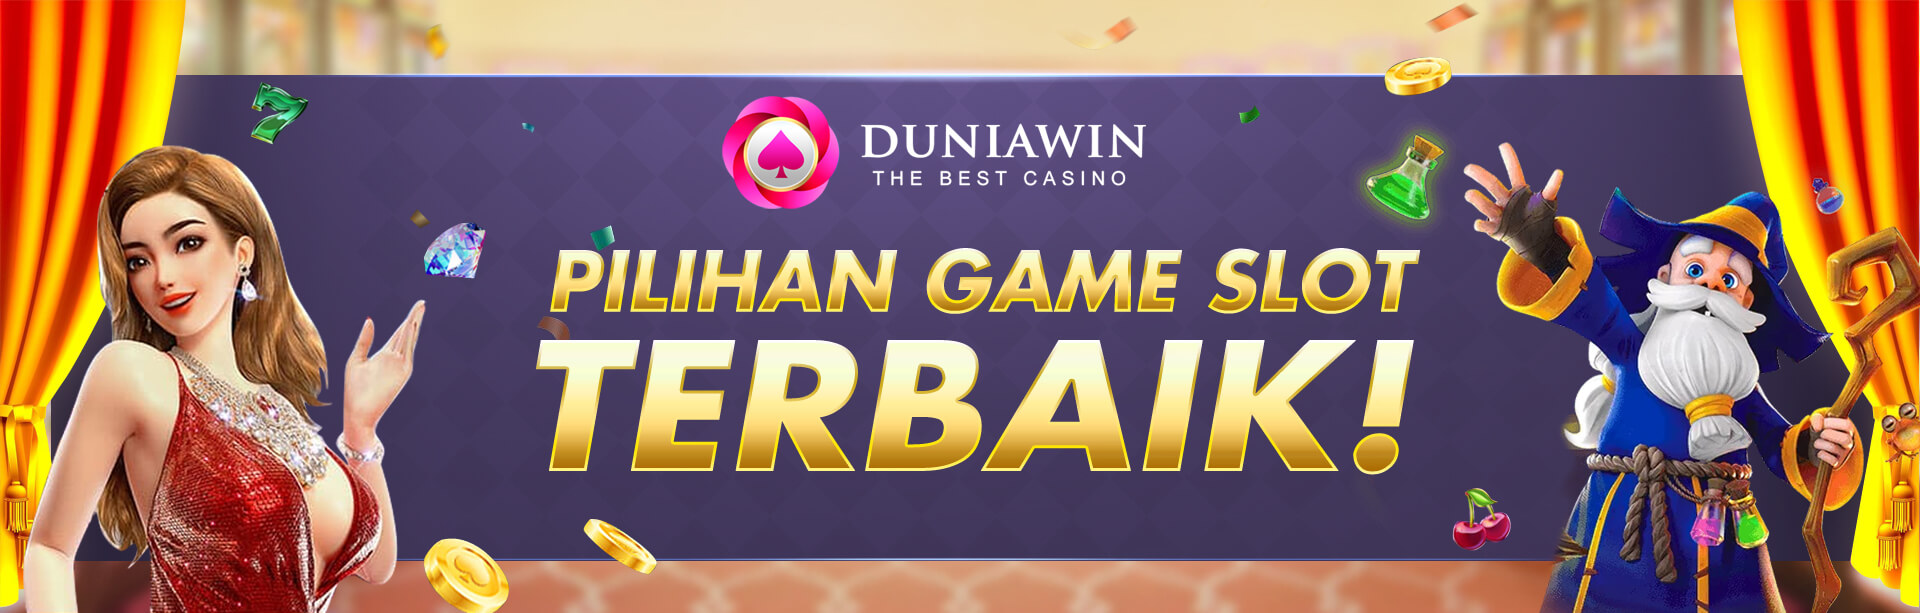 Game Slot Online - Judi Bola - Live Casino Terlengkap dengan Fitur Terbaik